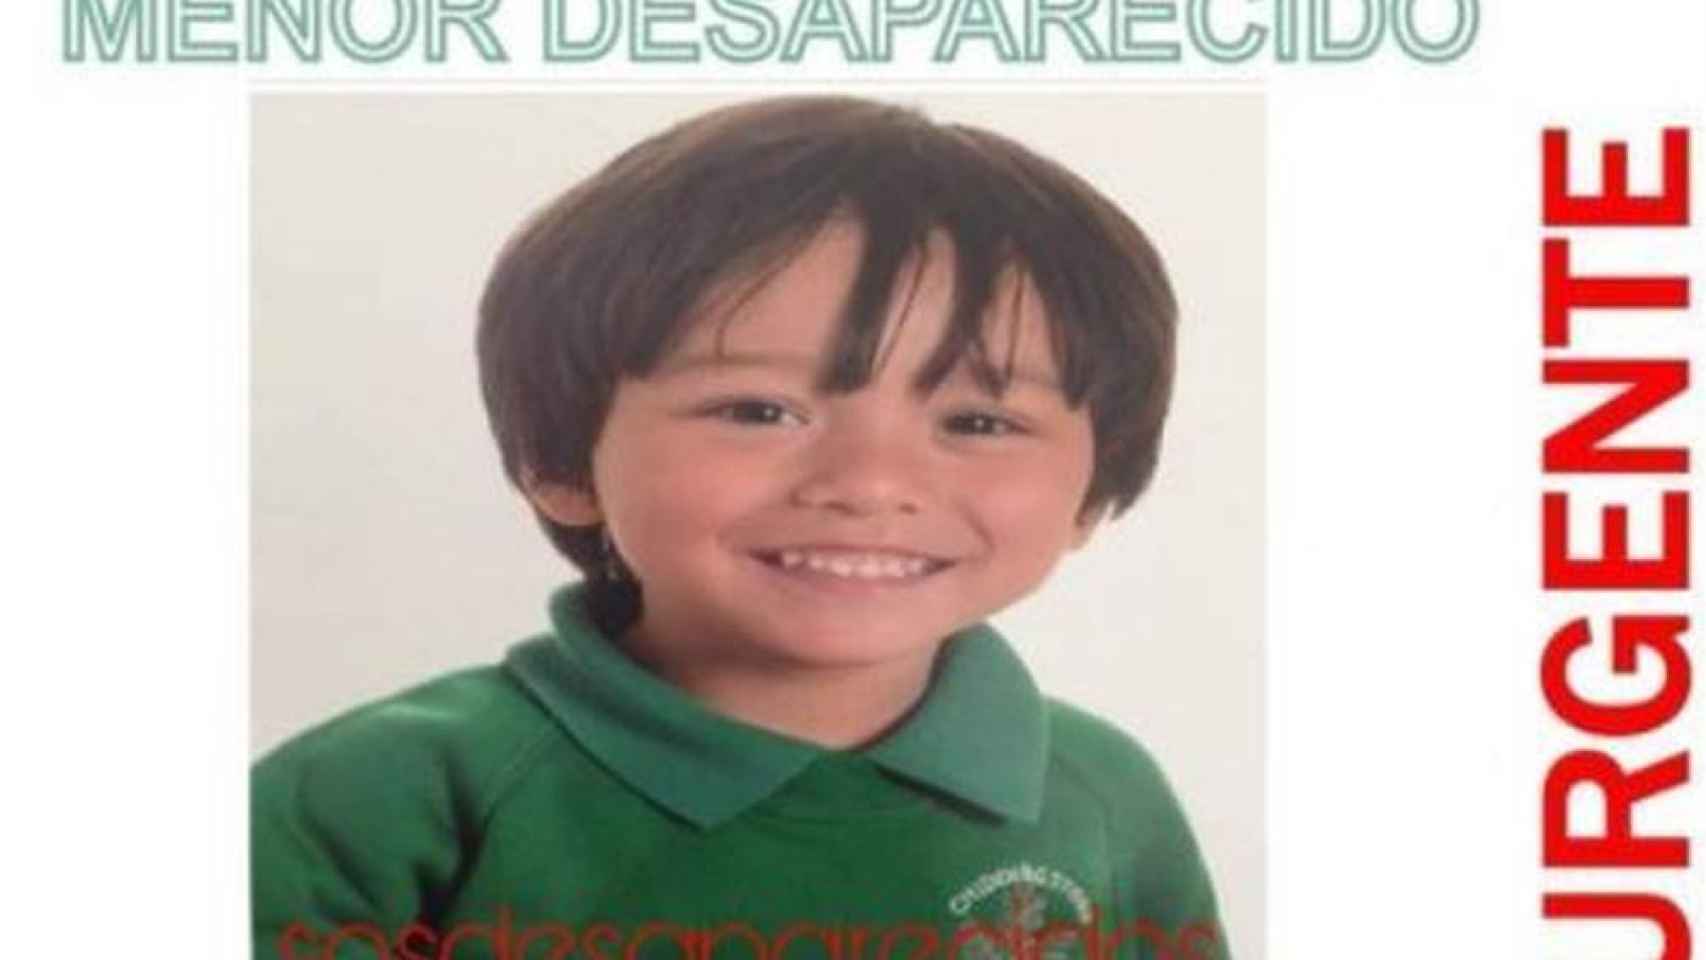 El niño australiano es una de las víctimas mortales del atentado de Barcelona.